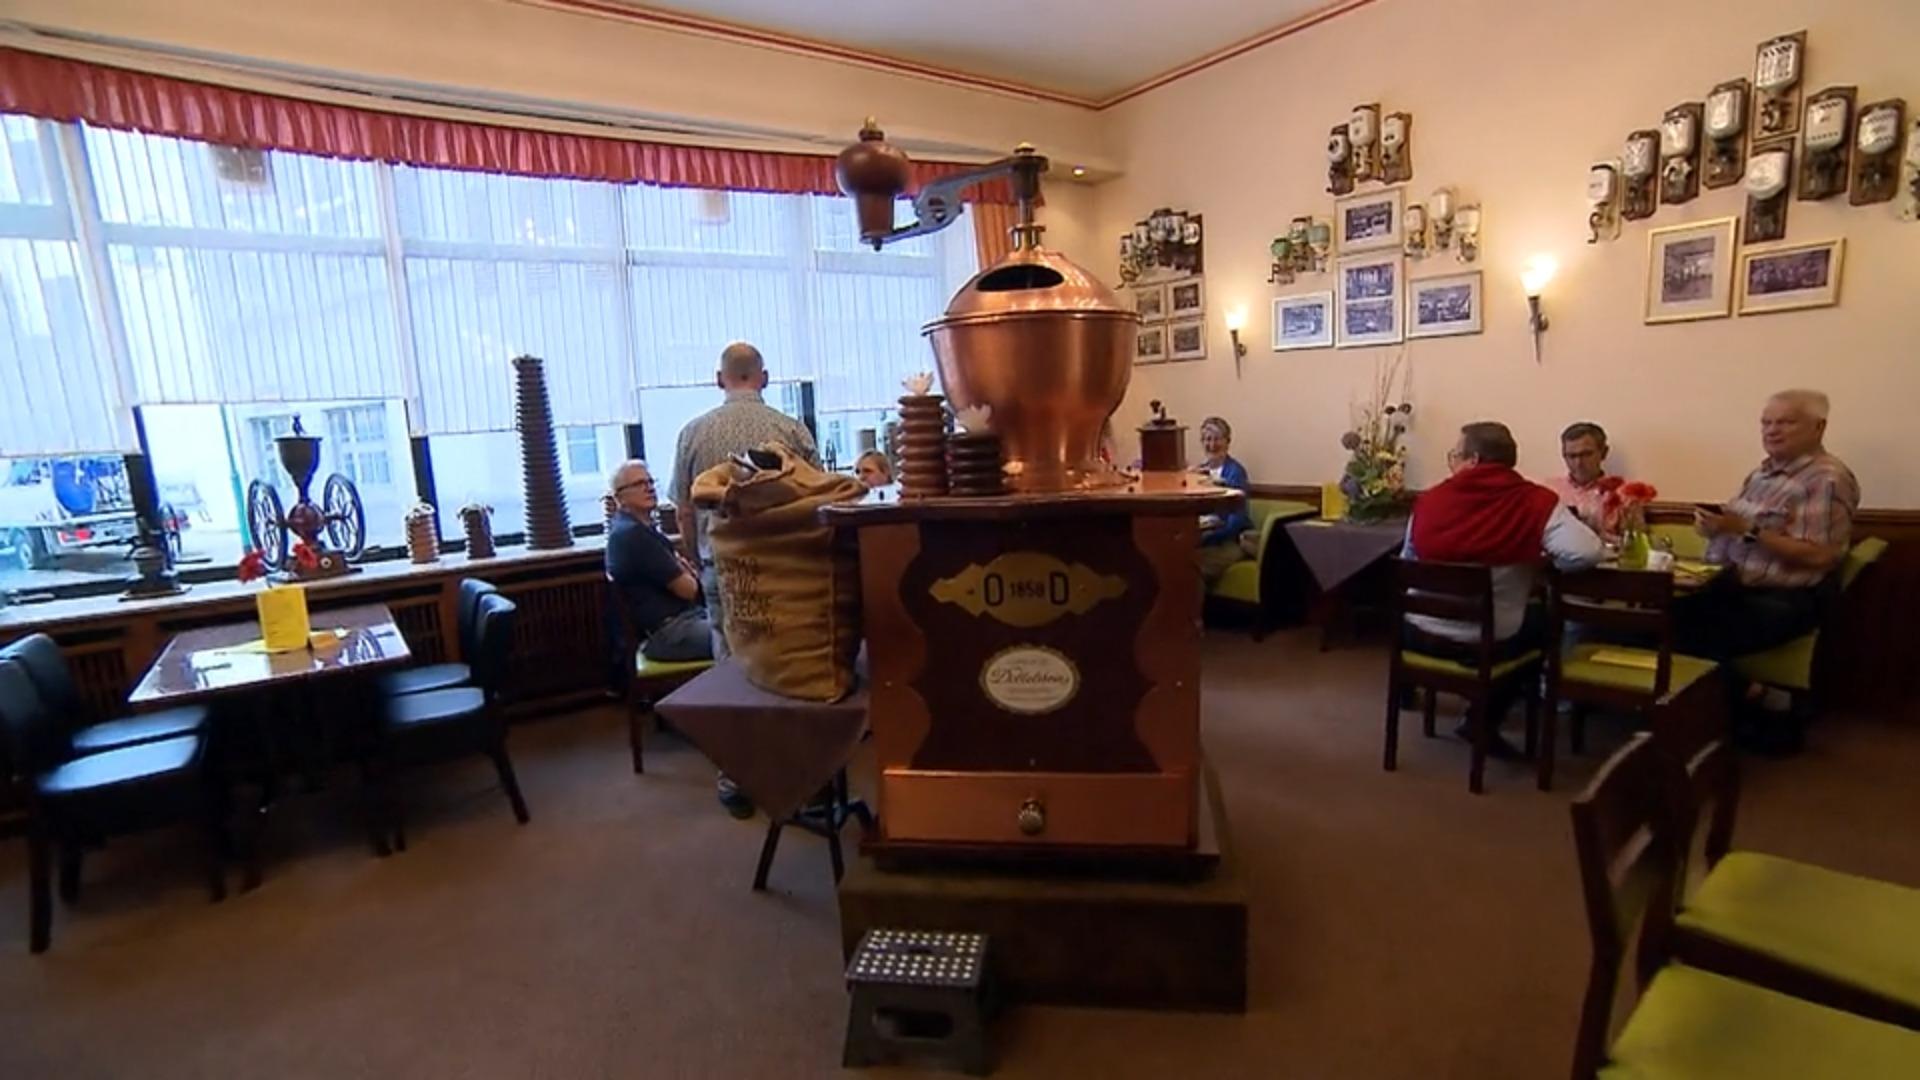 Größte Kaffeemühle steht in Duisburg Weltrekord